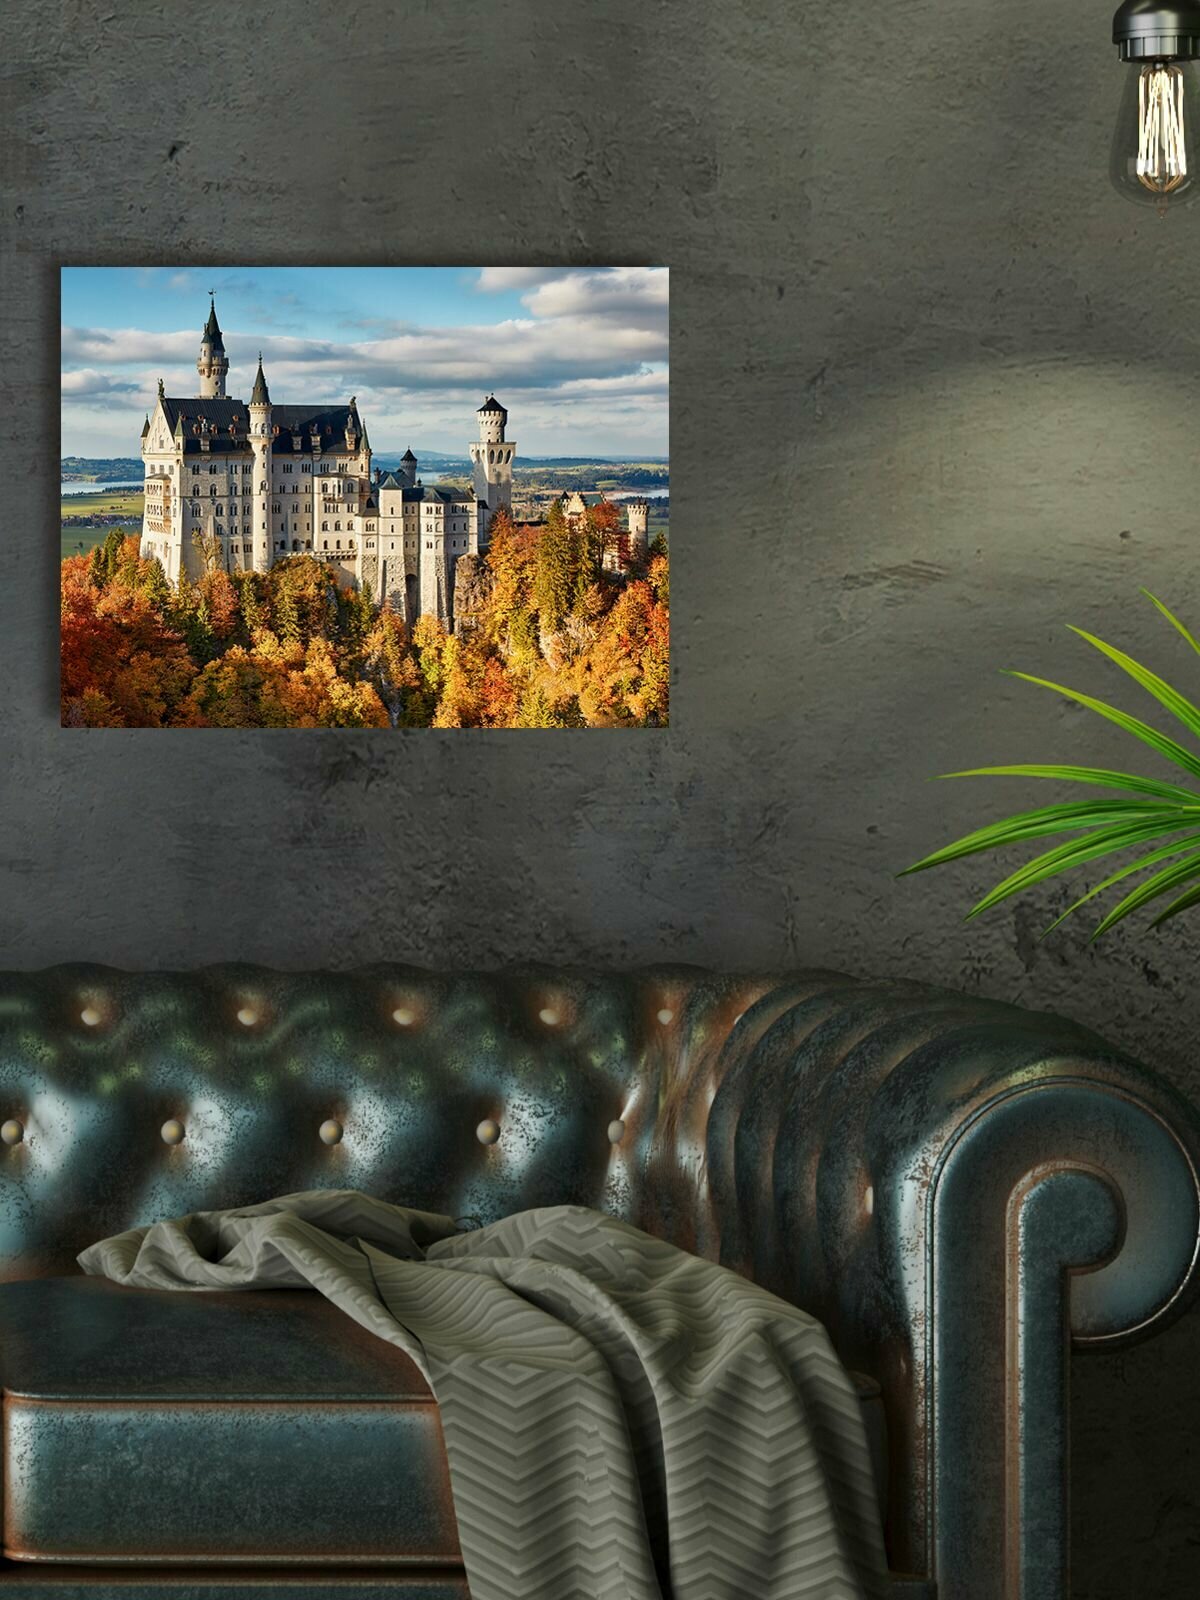 Картина для интерьера / Картина на стену "Замок" 30х40см М0053 - Крепления в подарок